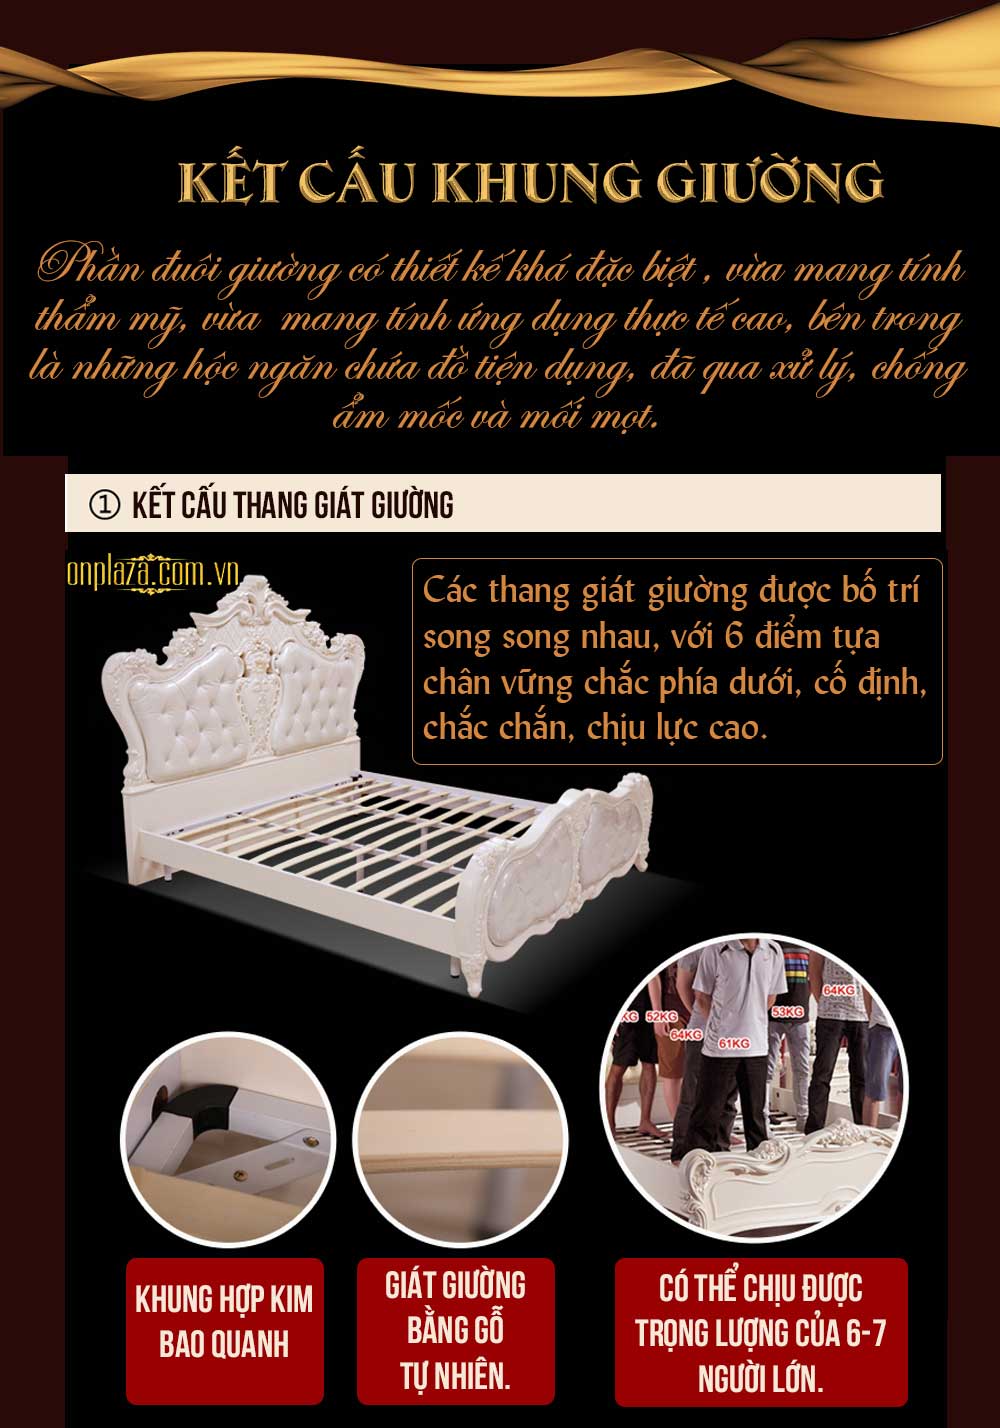 Giường ngủ cao cấp phong cách tân cổ điển thời thượng G06